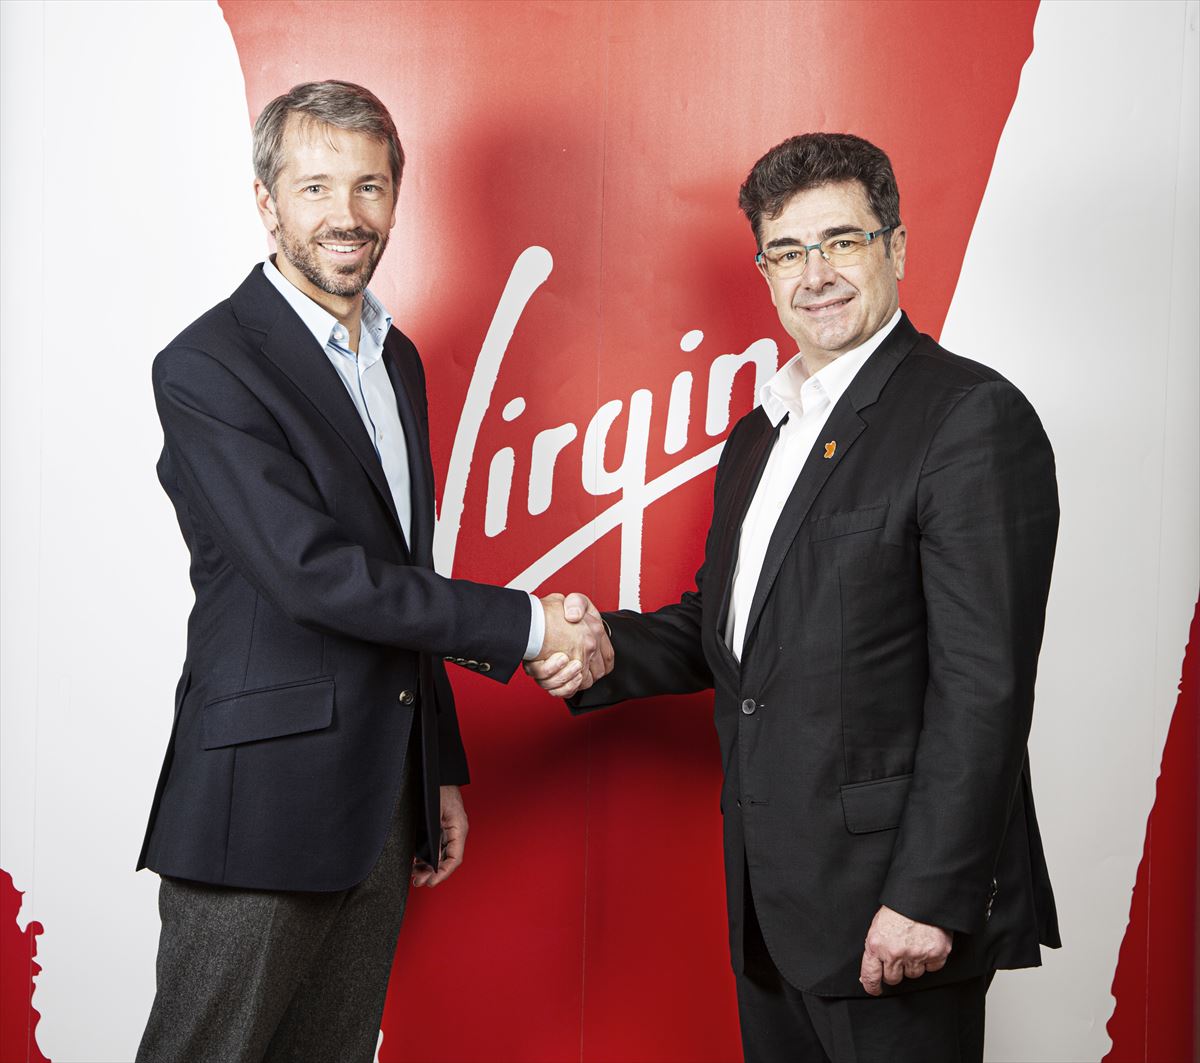 Josh Bayliss CEO del grupo Virgin y Jose Miguel García CEO del grupo Euskaltel.